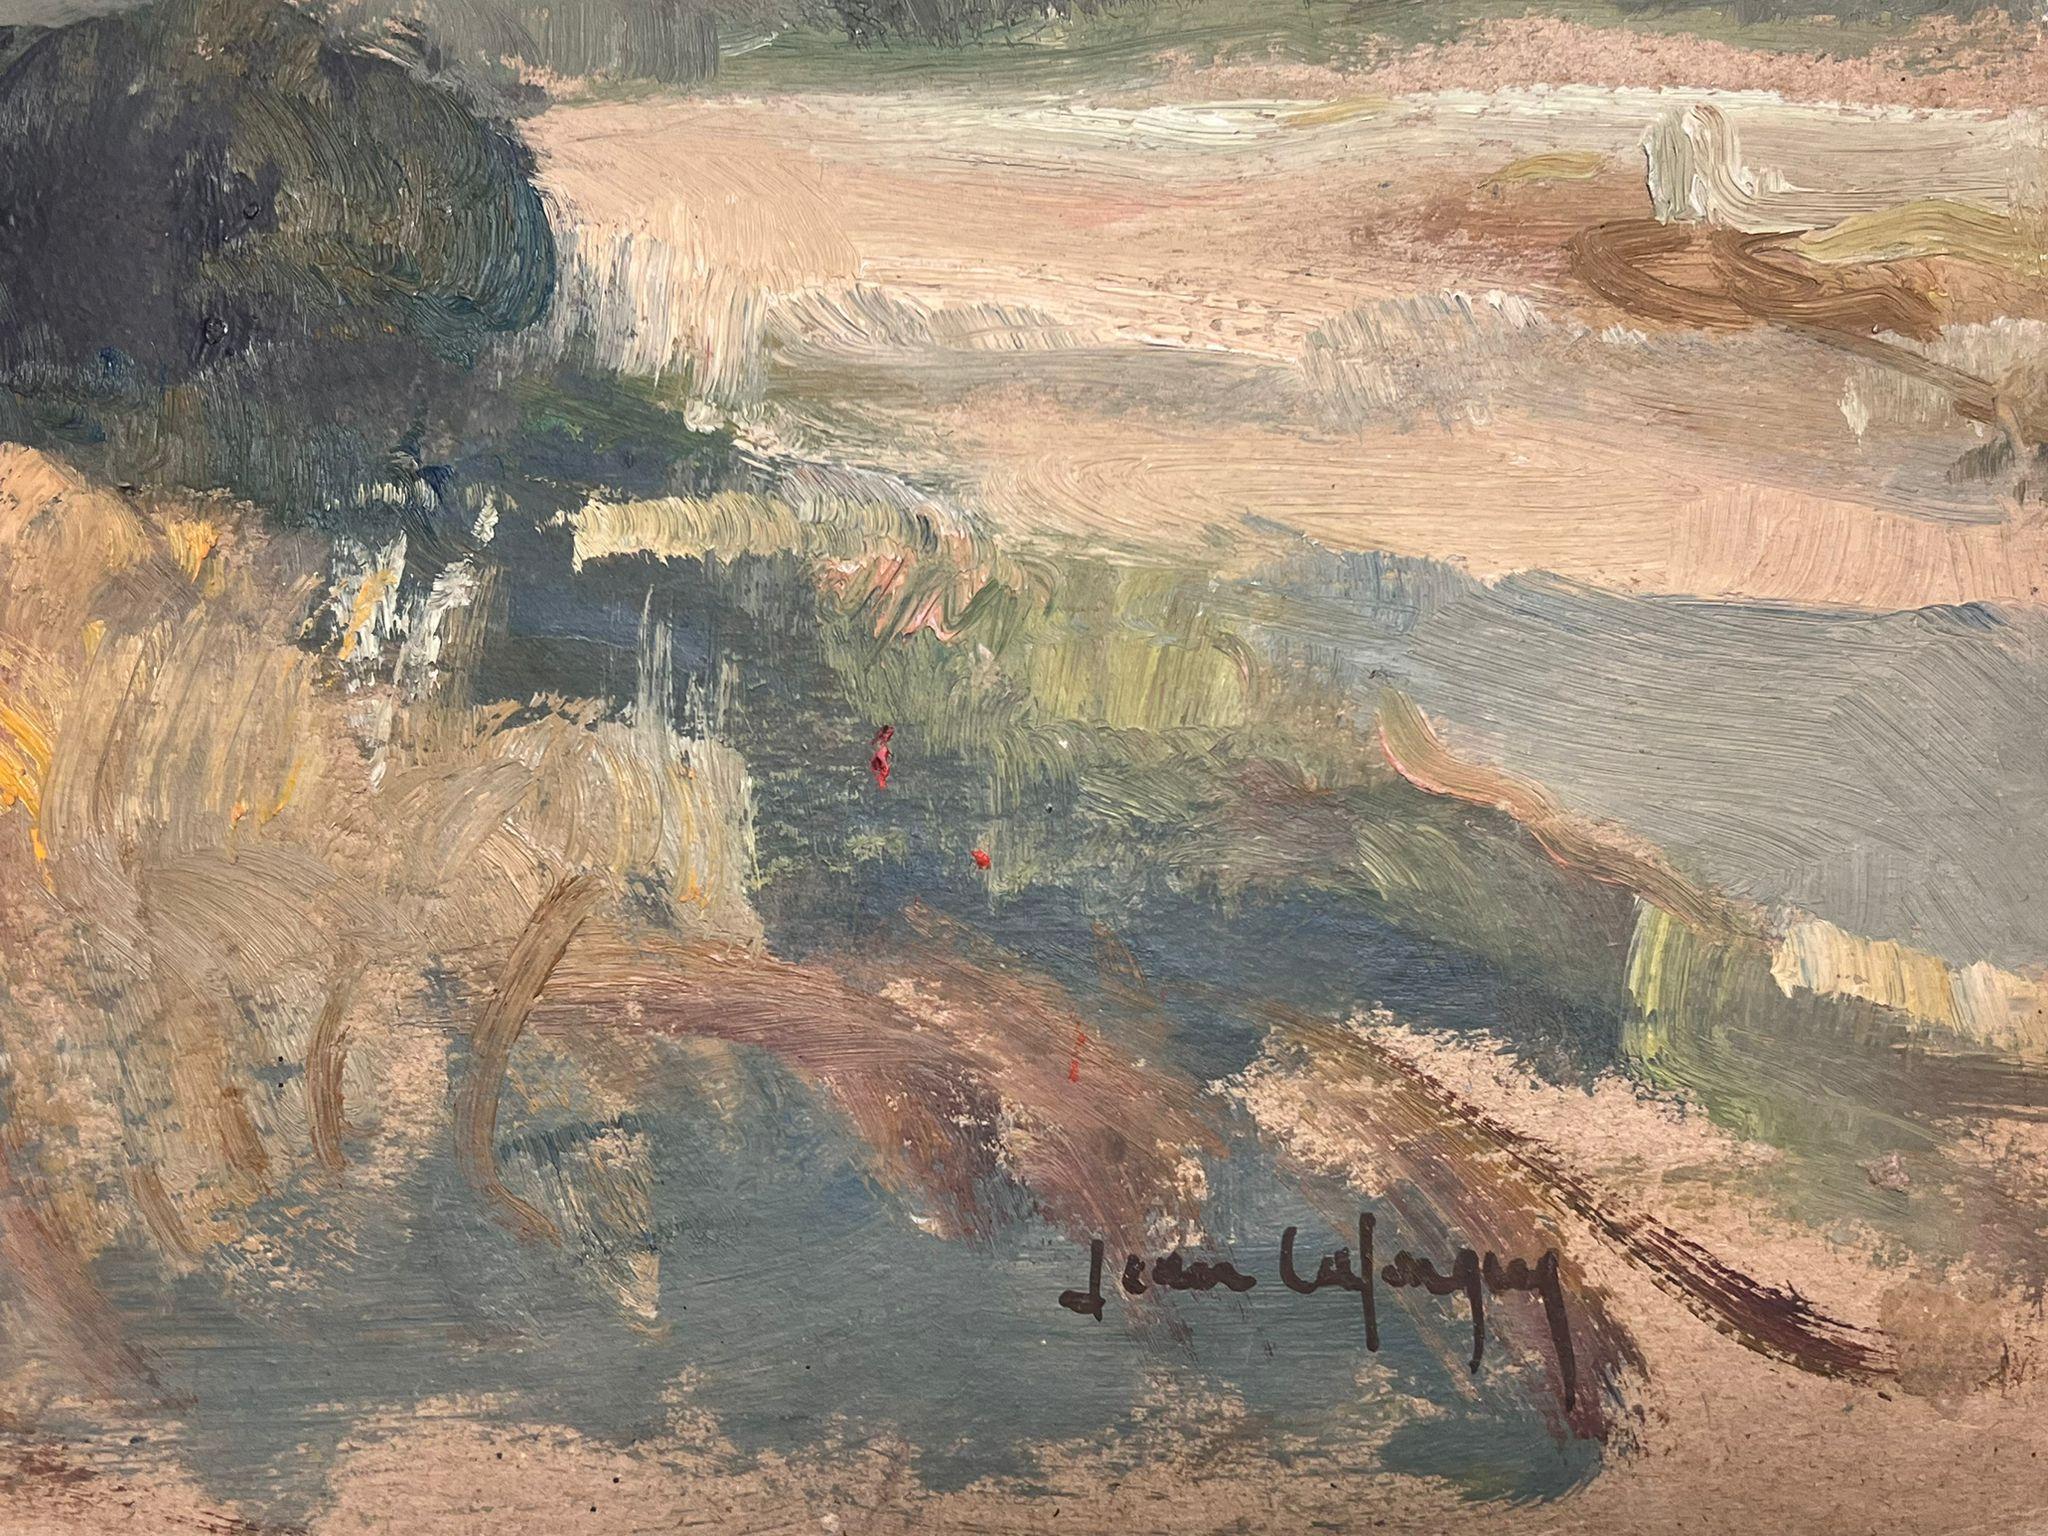 Jean La Forgue (Französisch 1901-1975)
signiertes Öl auf Karton, ungerahmt
Gemälde: 18 x 21,5 Zoll
Herkunft: Nachlass des Künstlers, Frankreich
Zustand: das Gemälde ist auf ungespannter Leinwand und hat alte Falten, Knicke etc.etc. Es wird als